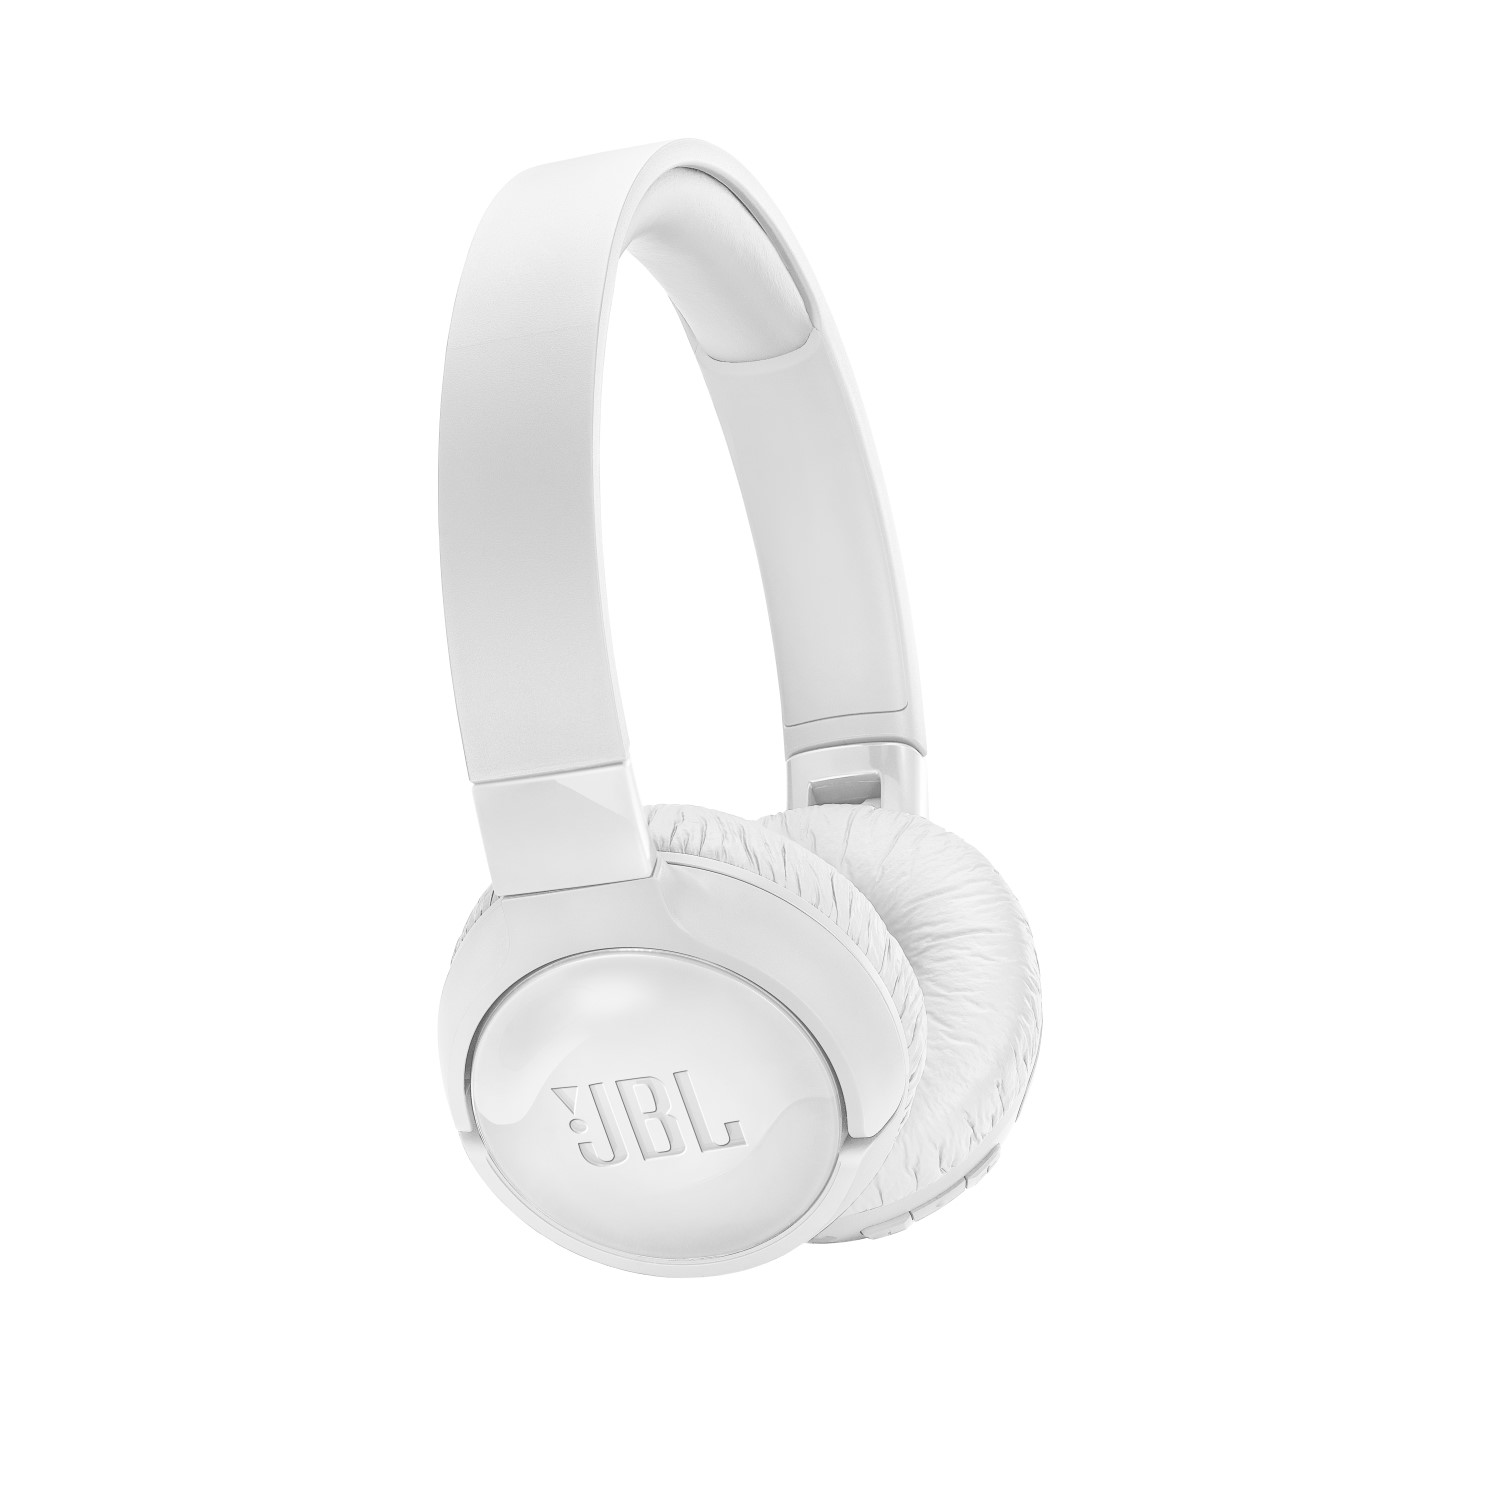 سماعات تيون 600 خارج الأذن العازلة للتشويش بتقنية بلوتوث من جيه إل بي، باللون الأبيض